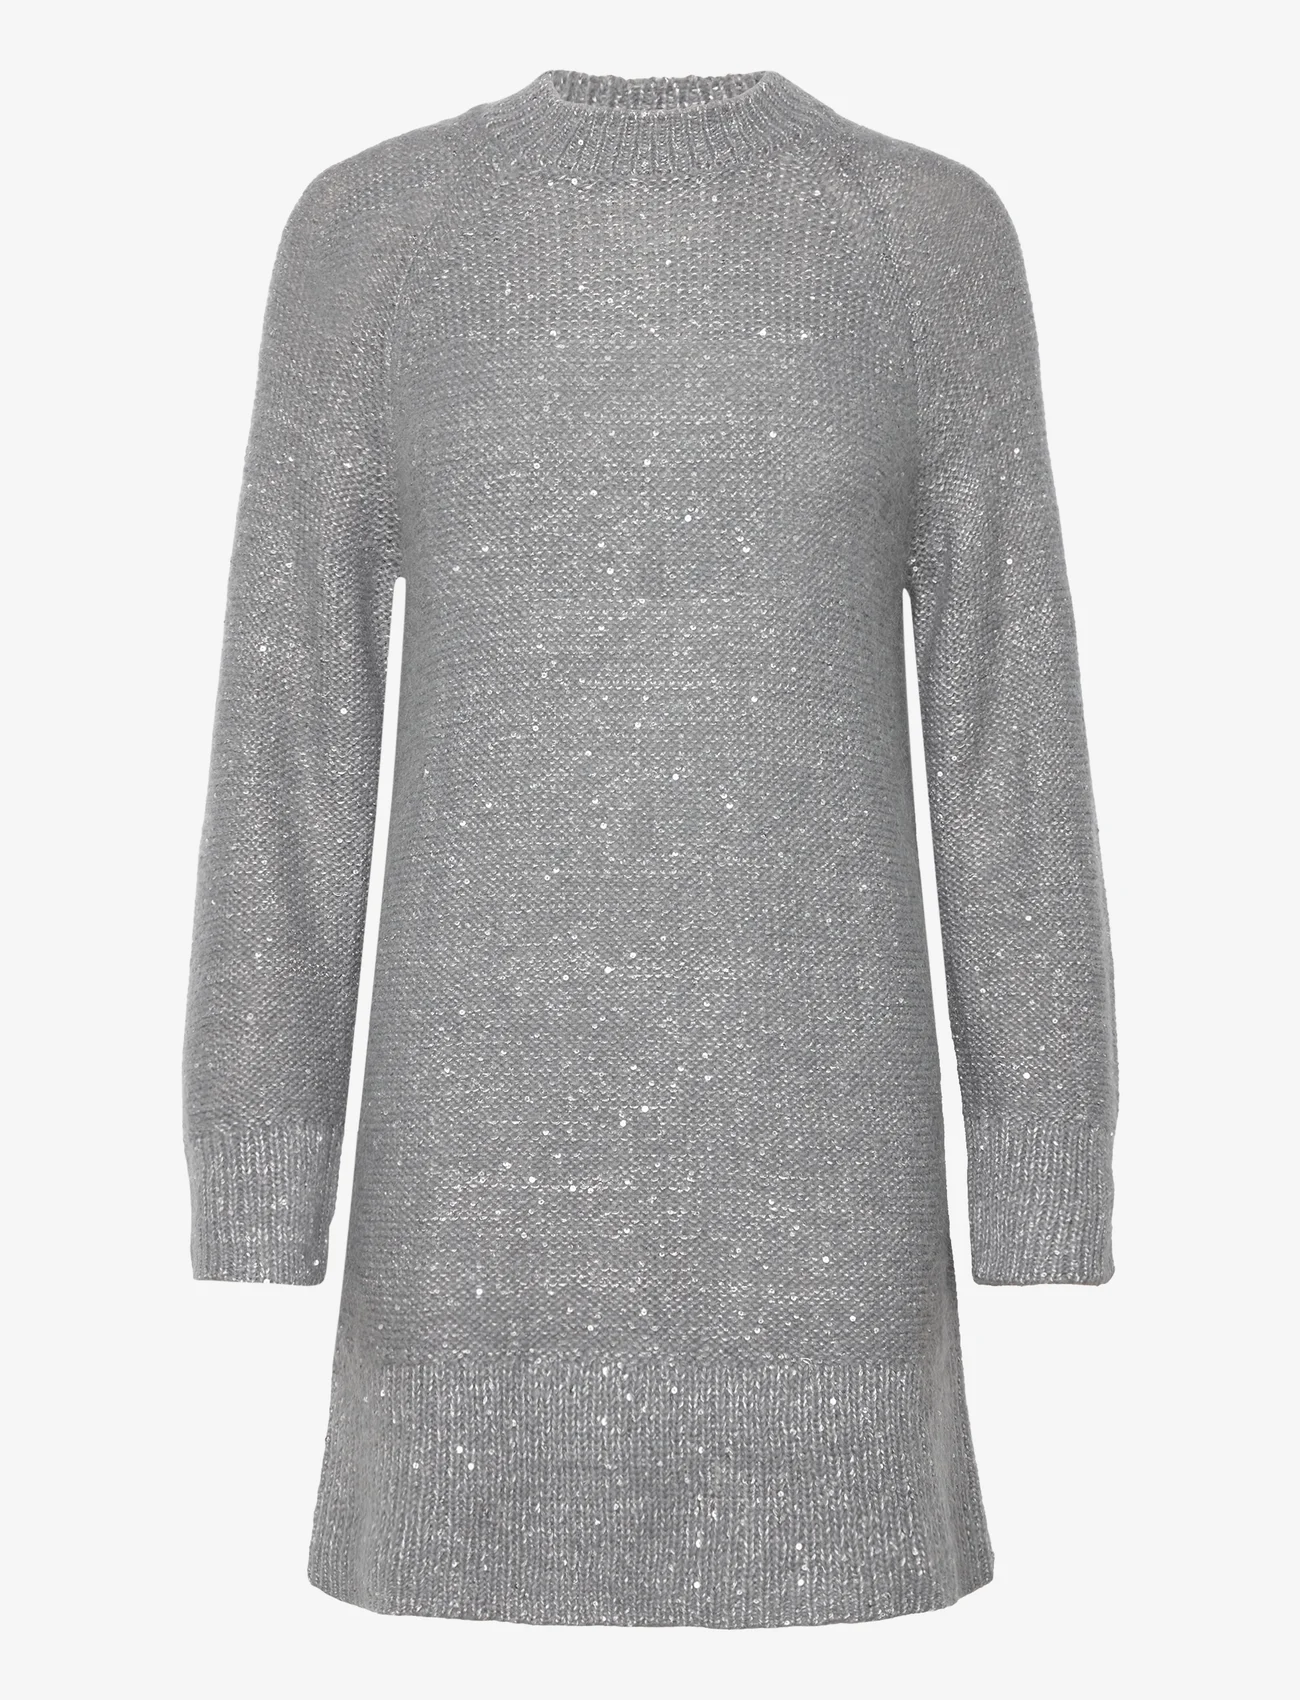 by Ti Mo - Glitter Knit Dress - stickade klänningar - 051 - silver - 0